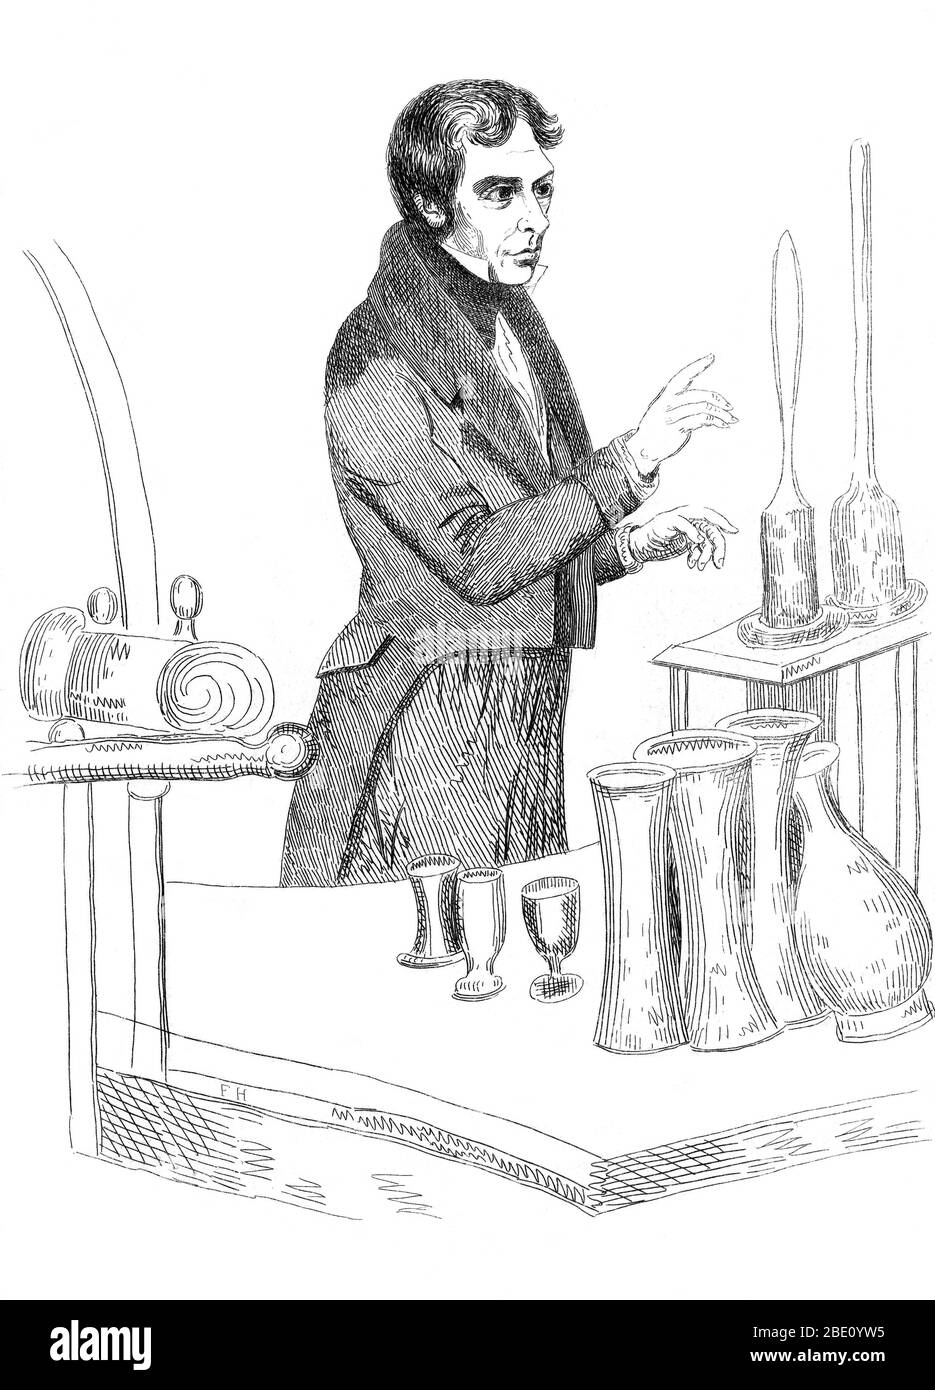 Michael Faraday (22 settembre 1791 – 25 agosto 1867) è stato un chimico e fisico inglese che ha contribuito ai campi dell'elettromagnetismo e dell'elettrochimica.Faraday ha sperimentato con l'elettricità e il magnetismo, proponendo che il magnetismo era una forza circolare. È noto anche per la scoperta della rotazione ottica magnetica, dell'induzione elettromagnetica, per l'inventazione della dinamo, per il perfezionamento del bruciatore Bunsen e per la formulazione della seconda legge dell'elettrolisi. Autore di 'manipolazione chimica', Faraday fu autoaddestrato e contribuì ai campi dell'elettromagnetismo e dell'elettrochimica dopo un apprendista Foto Stock